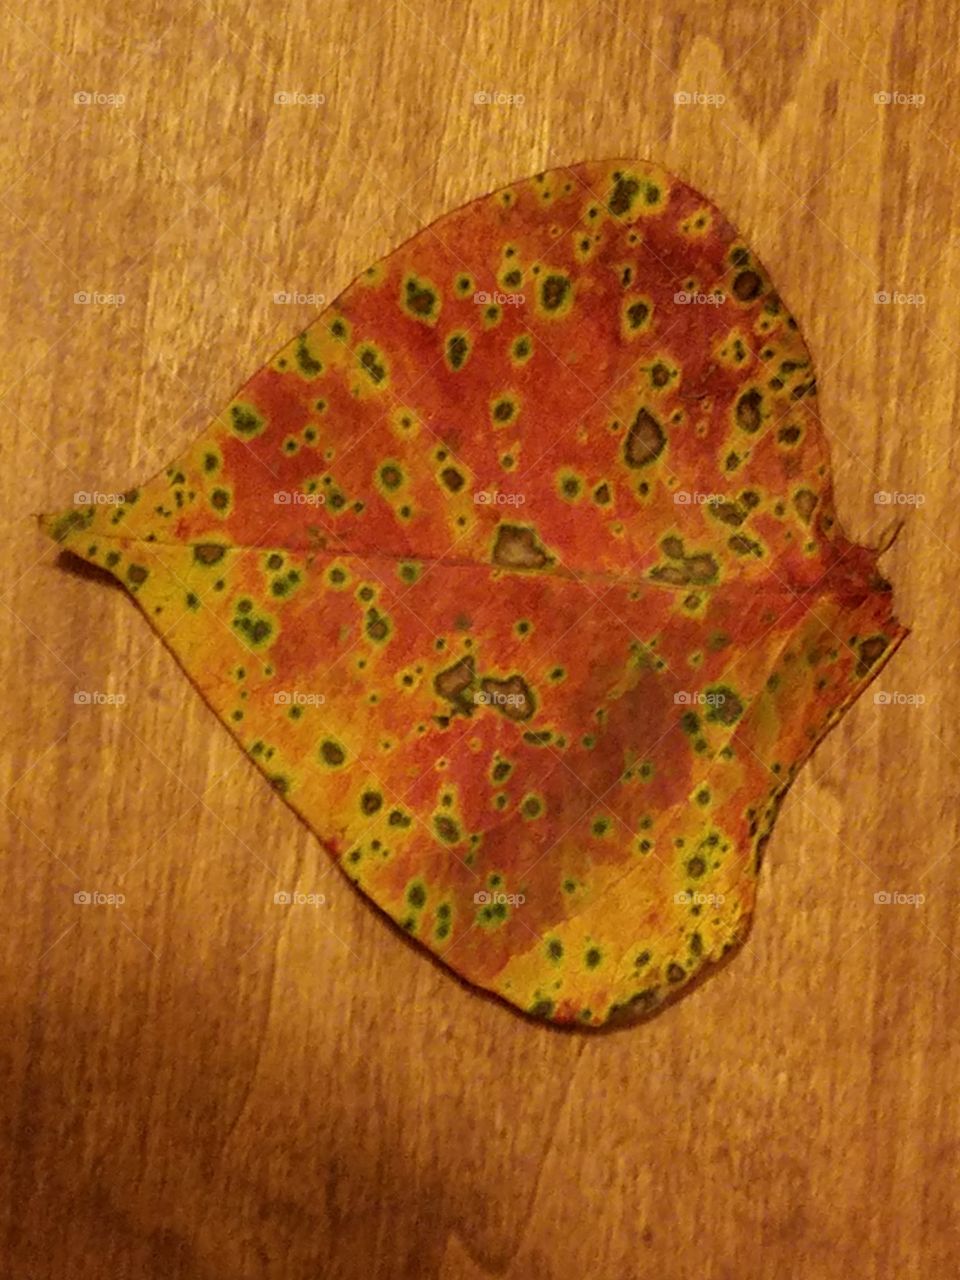 Decaying Leaf